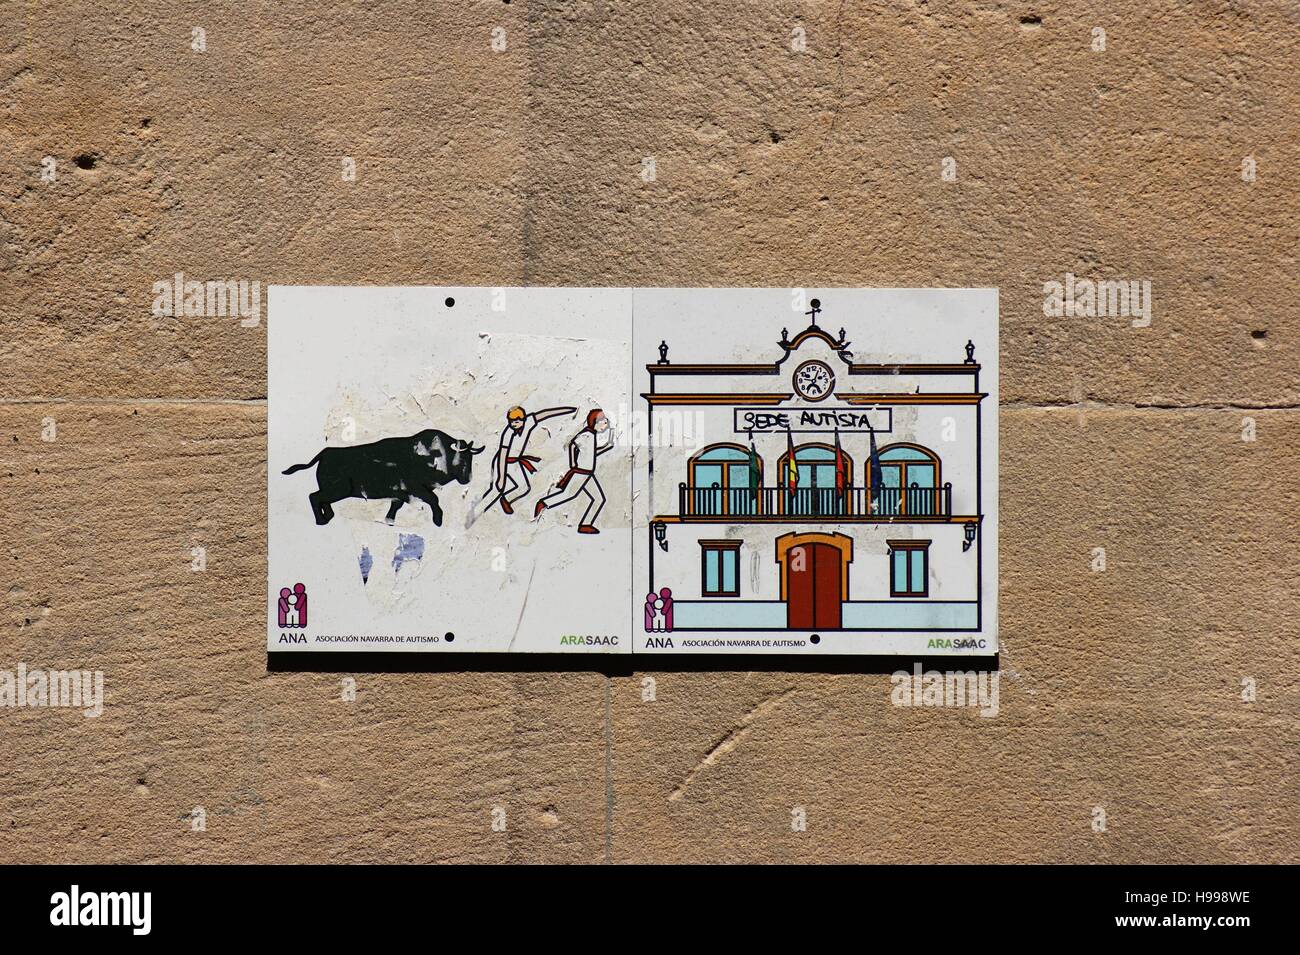 Le carrelage d'un mur extérieur représente la course annuelle des taureaux et l'hôtel de ville historique de Pampelune, en Espagne. Banque D'Images